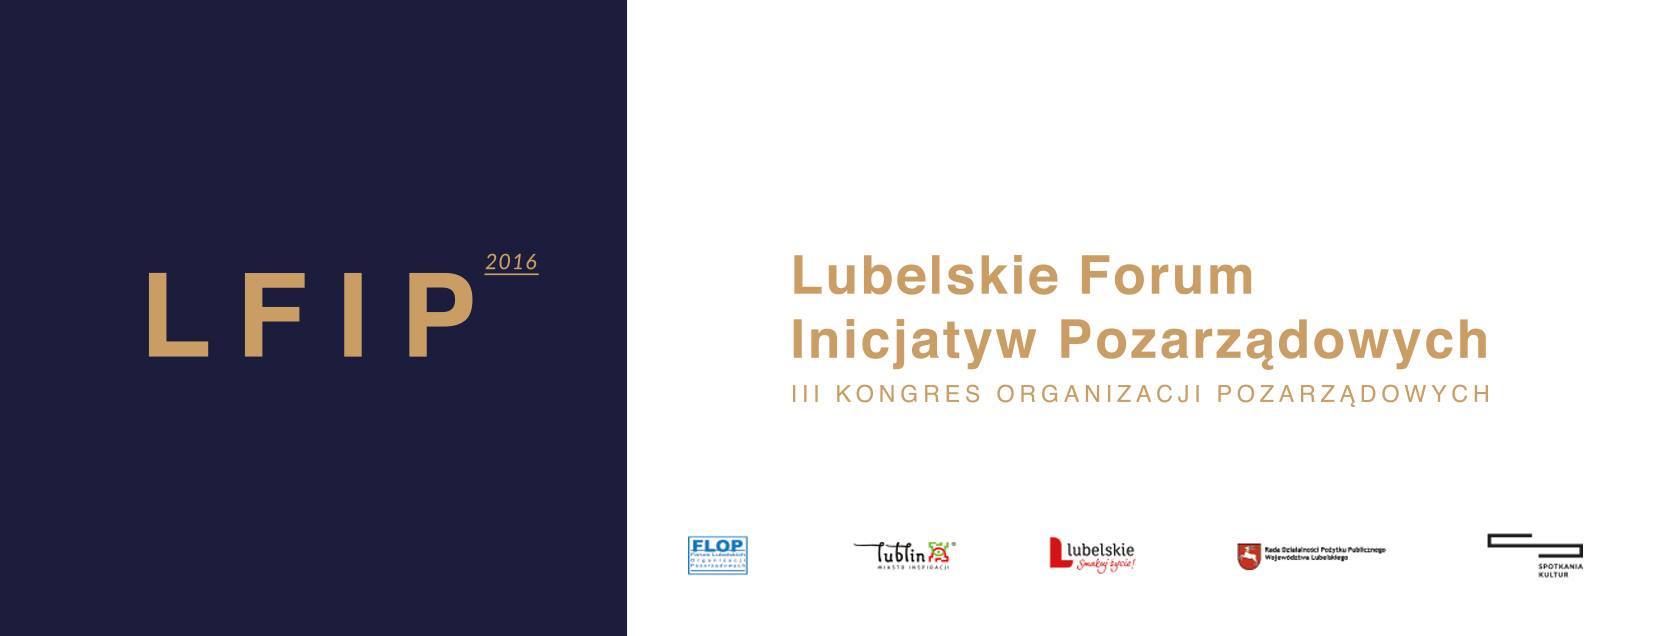 Lubelskie Forum Inicjatyw Pozarządowych 2016